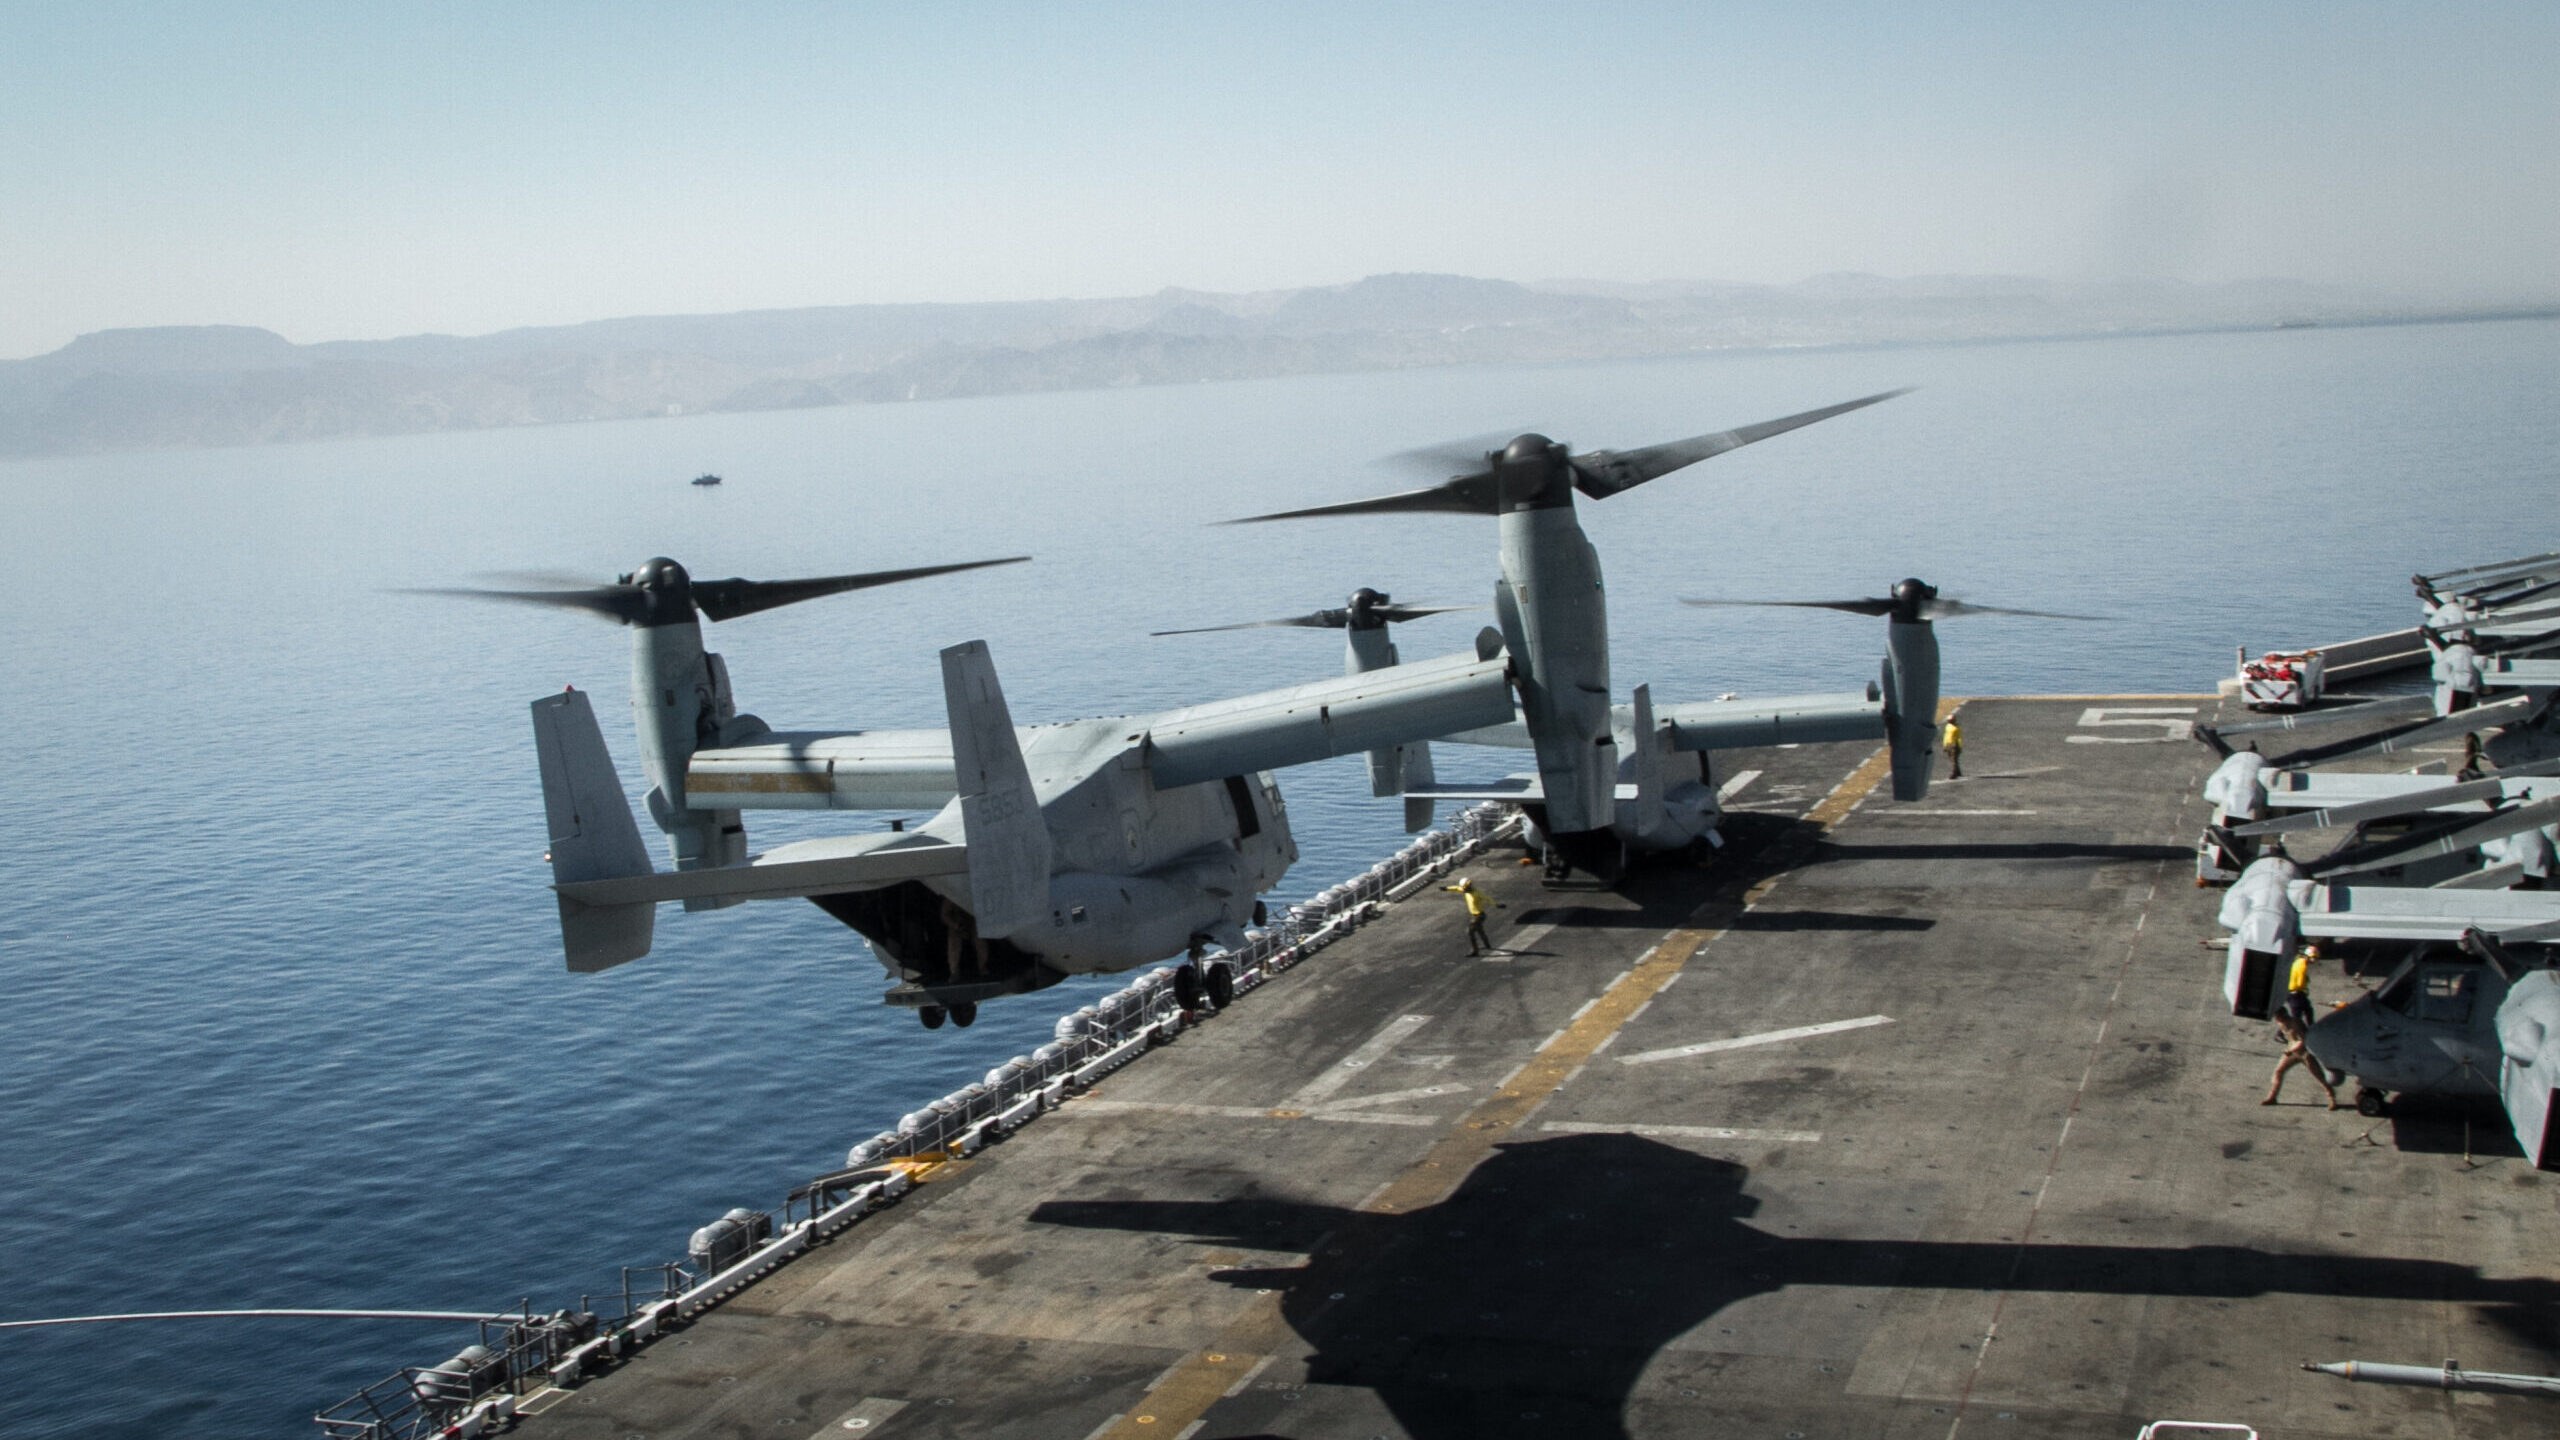 Air Force, Navy ground V-22 Osprey fleet days after fatal crash off Japan